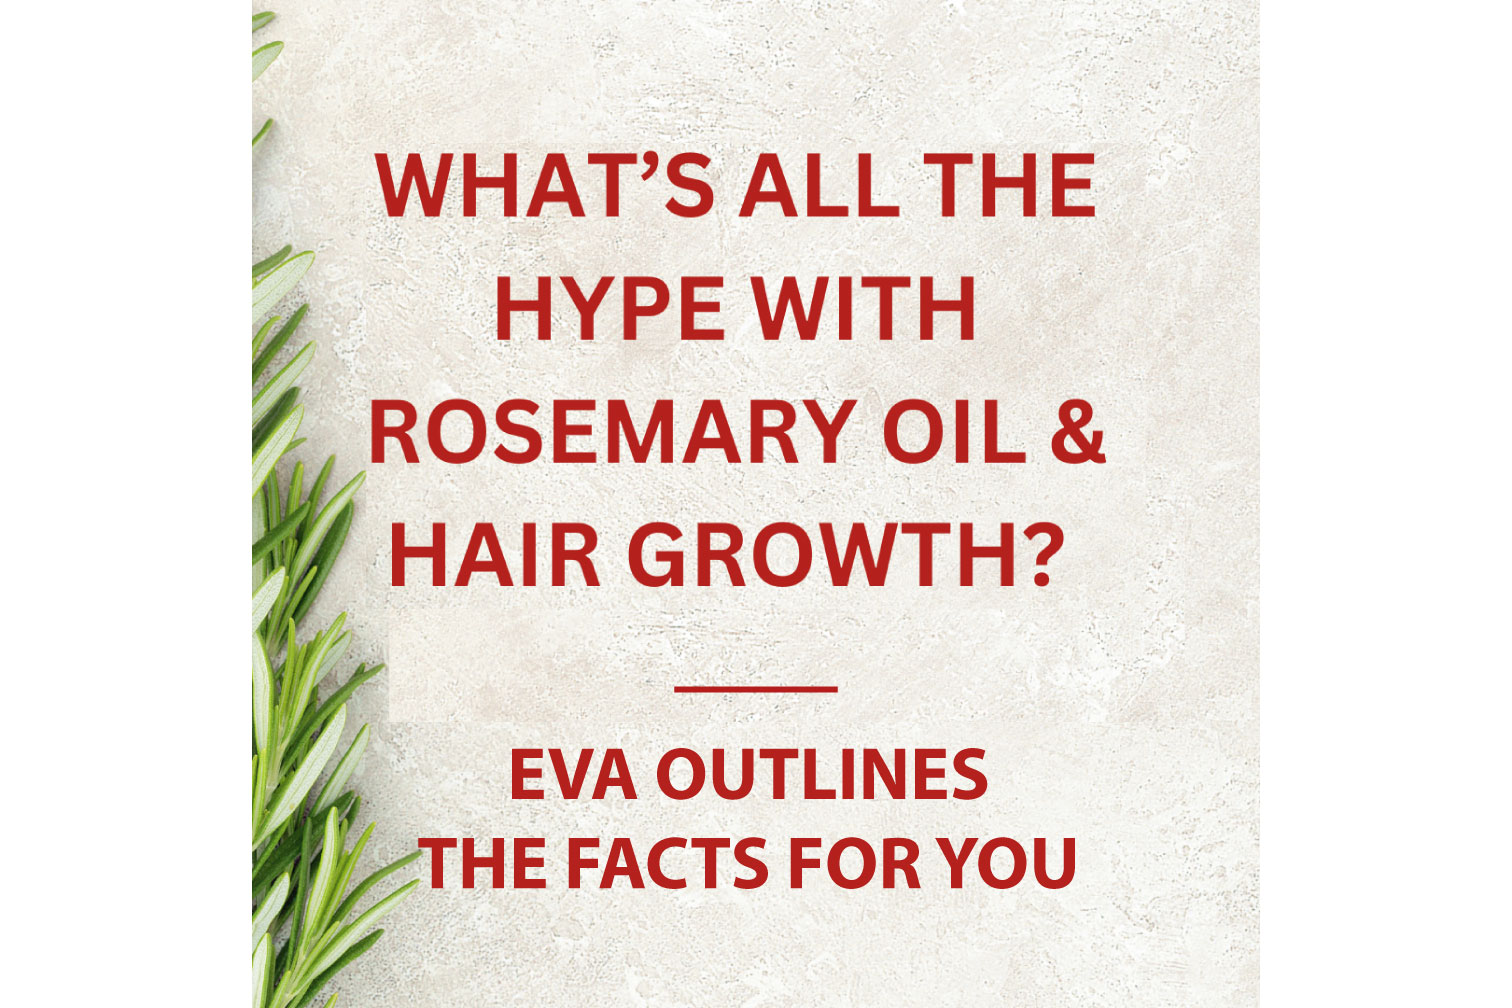 Rosemary Oil & Hair Growth?